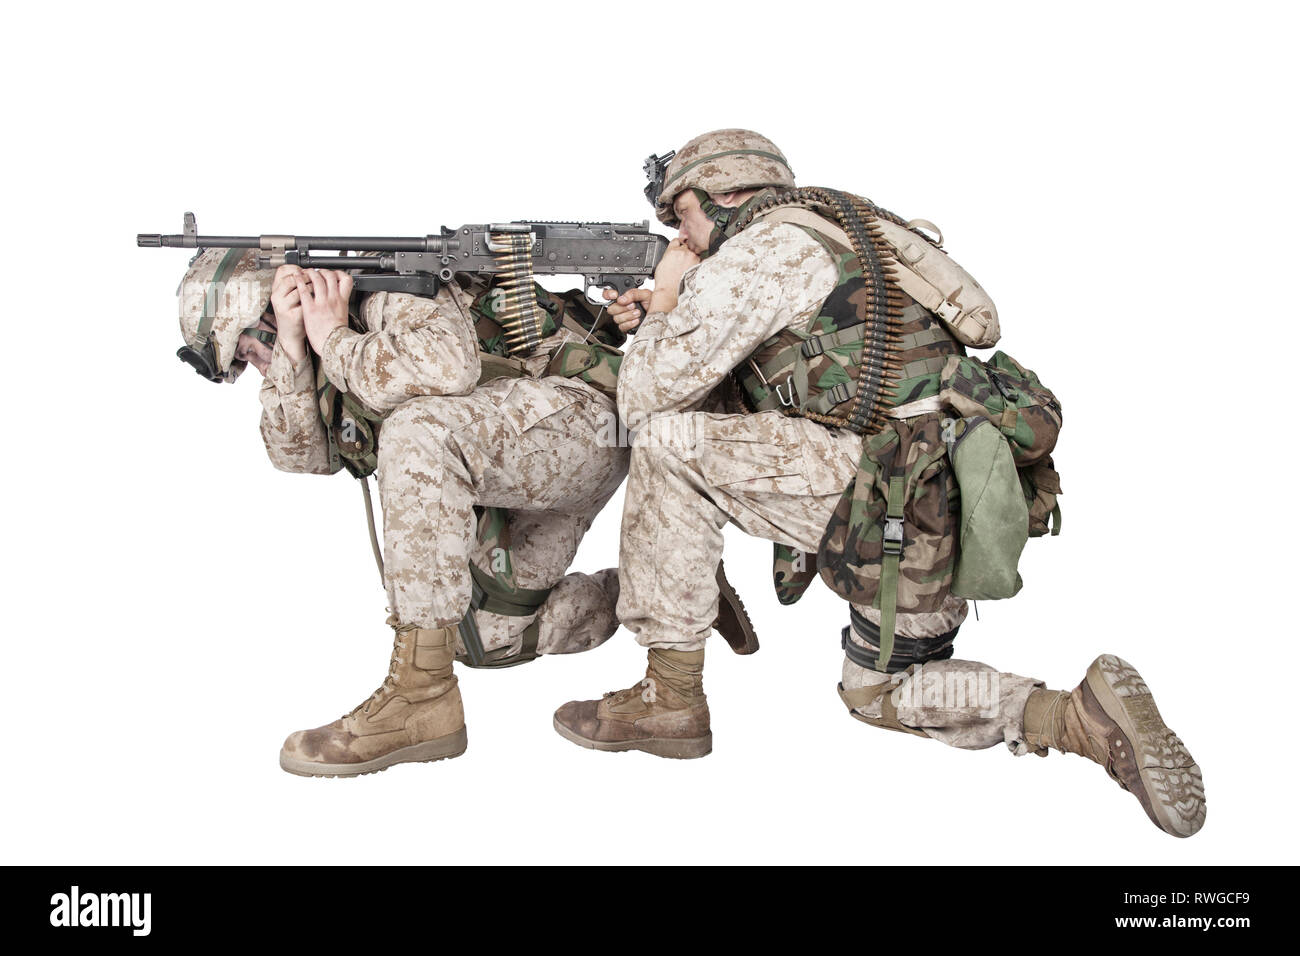 Soldat, Maschinengewehr auf der Rückseite der Begleiter und feuern auf Gegner. Stockfoto